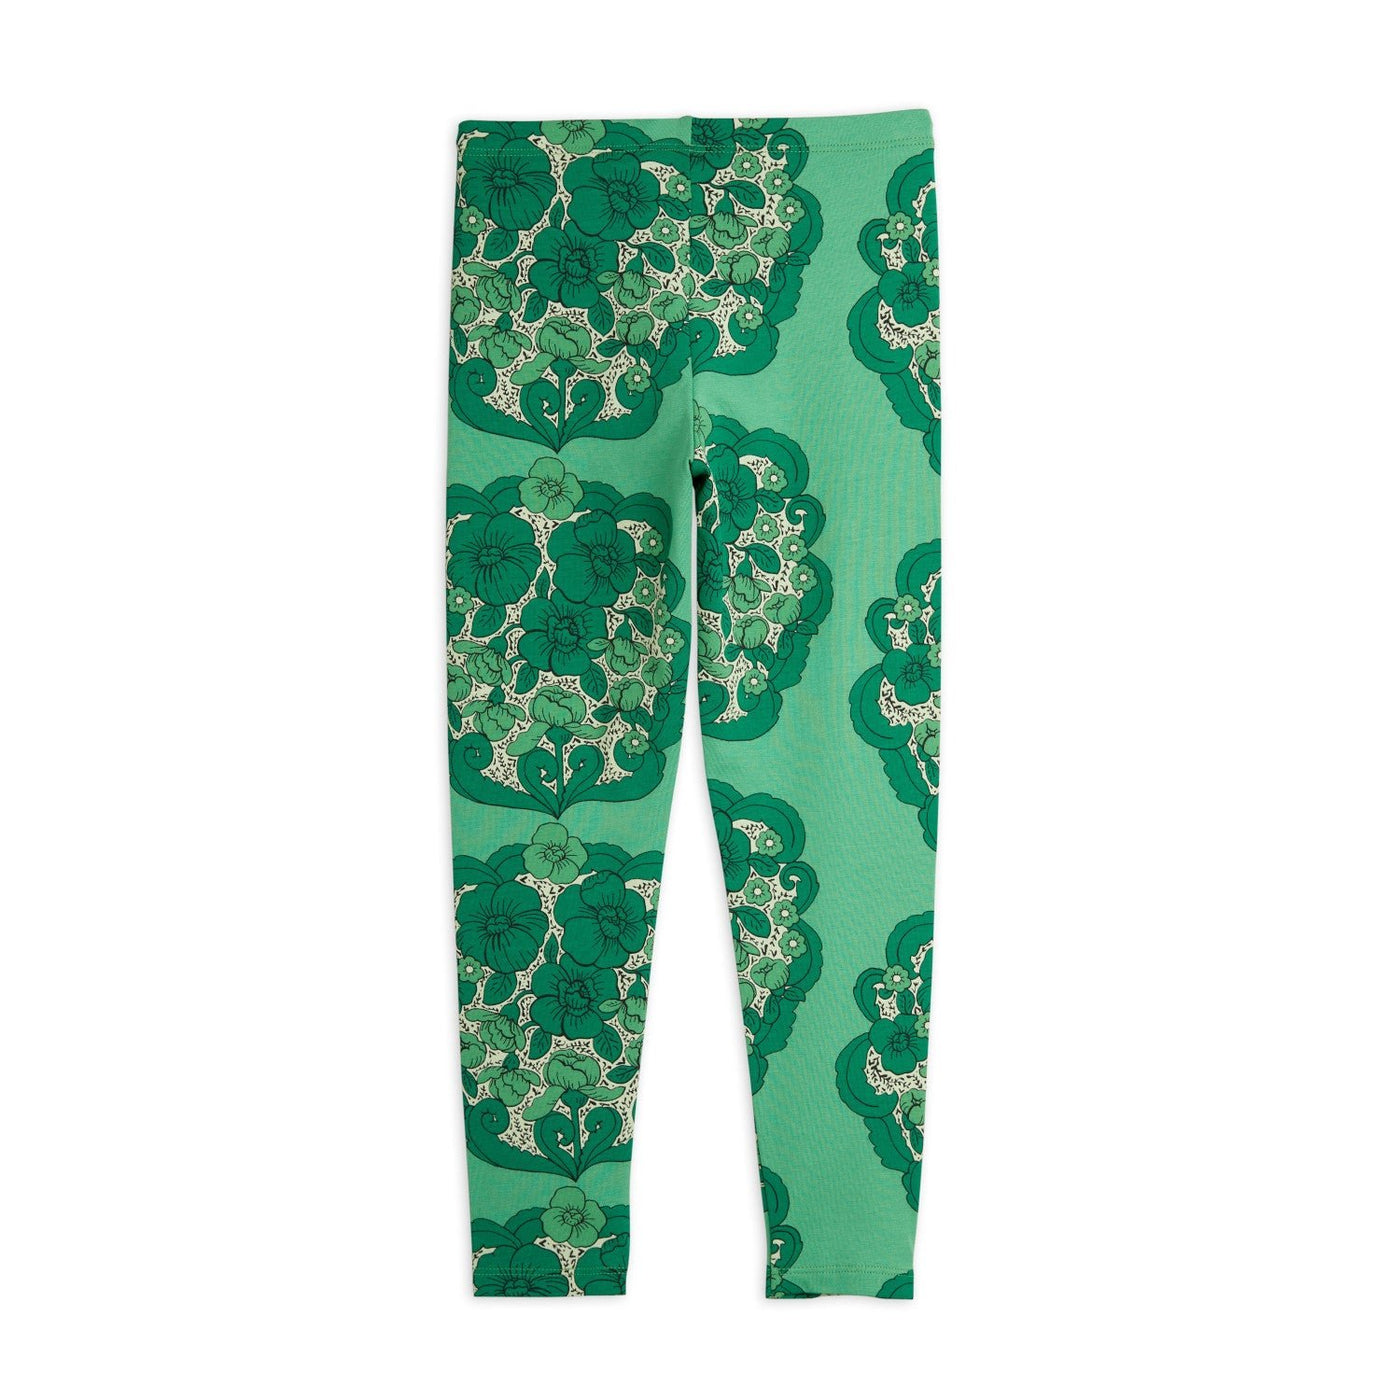 Flower Leggings (Green) by Mini Rodini - Petite Belle